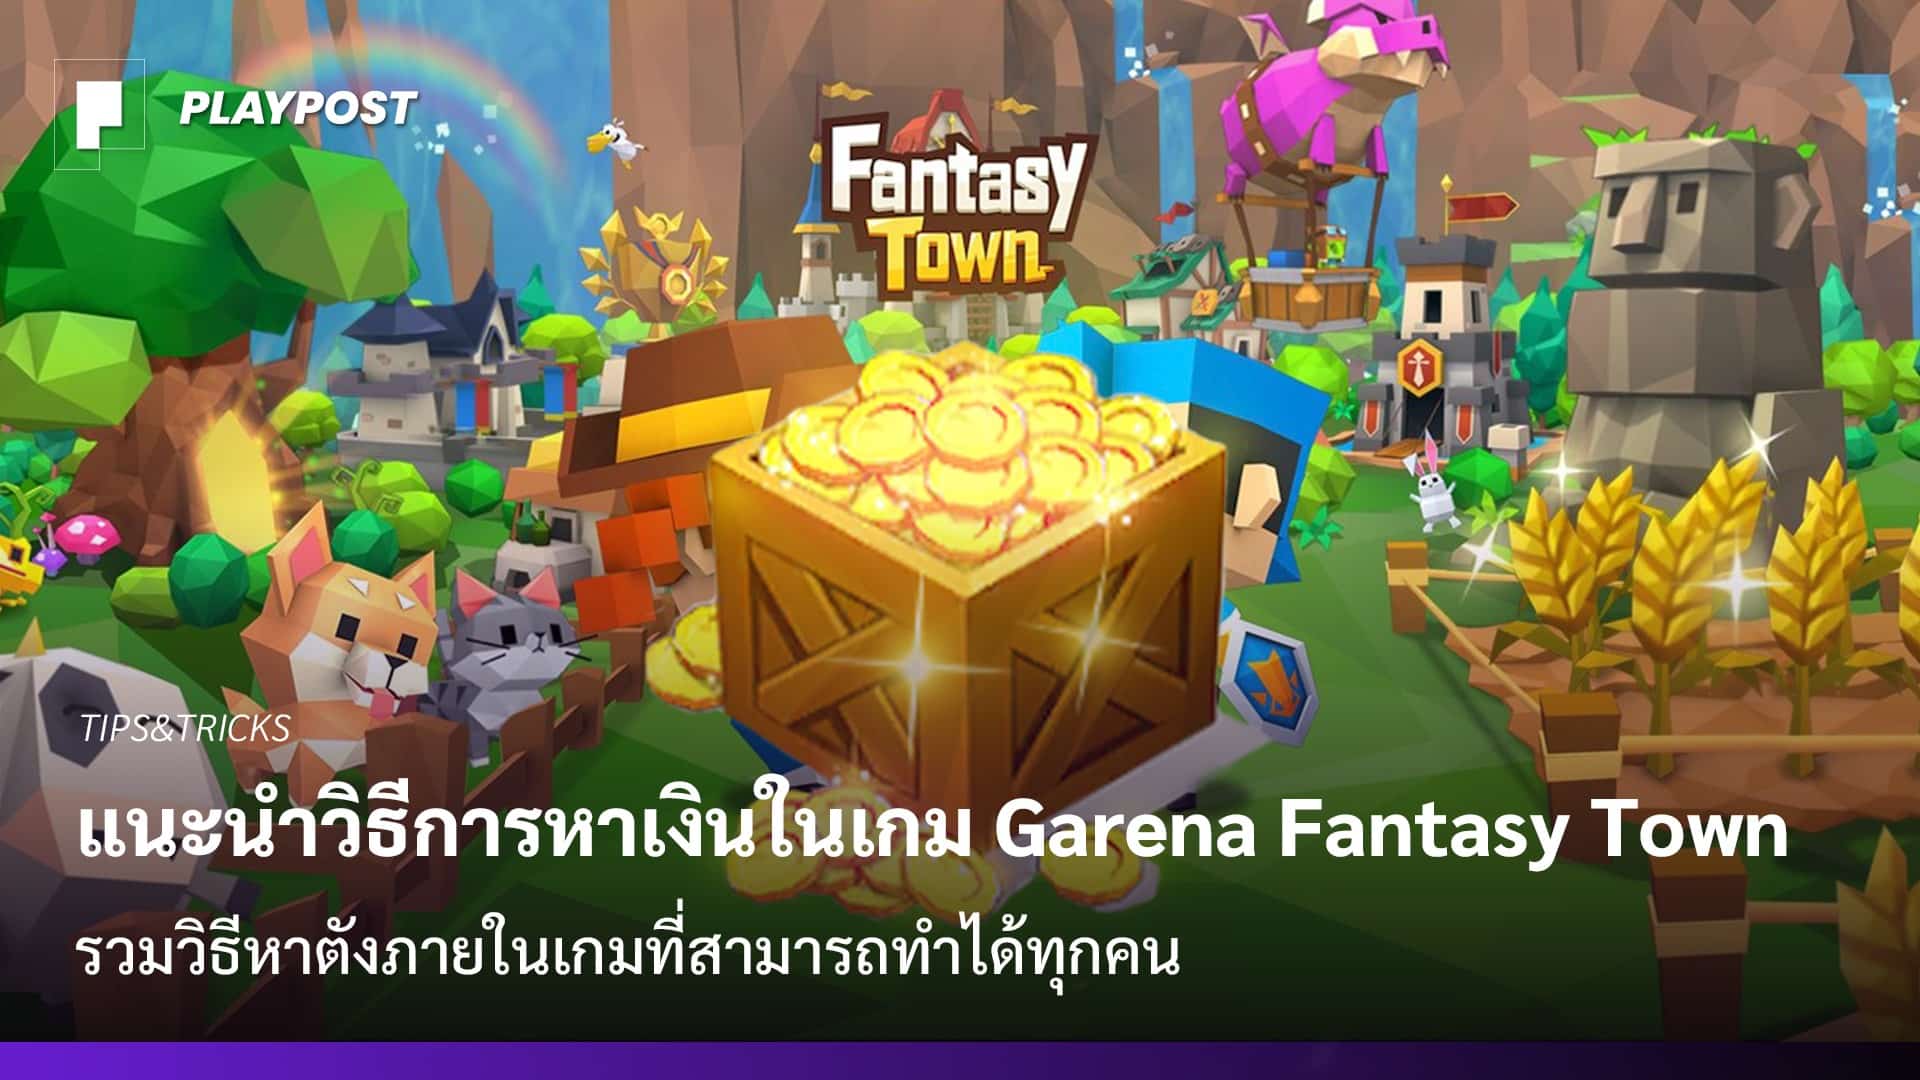 แนะนำวิธีการหาเงินในเกม Garena Fantasy Town - Playpost